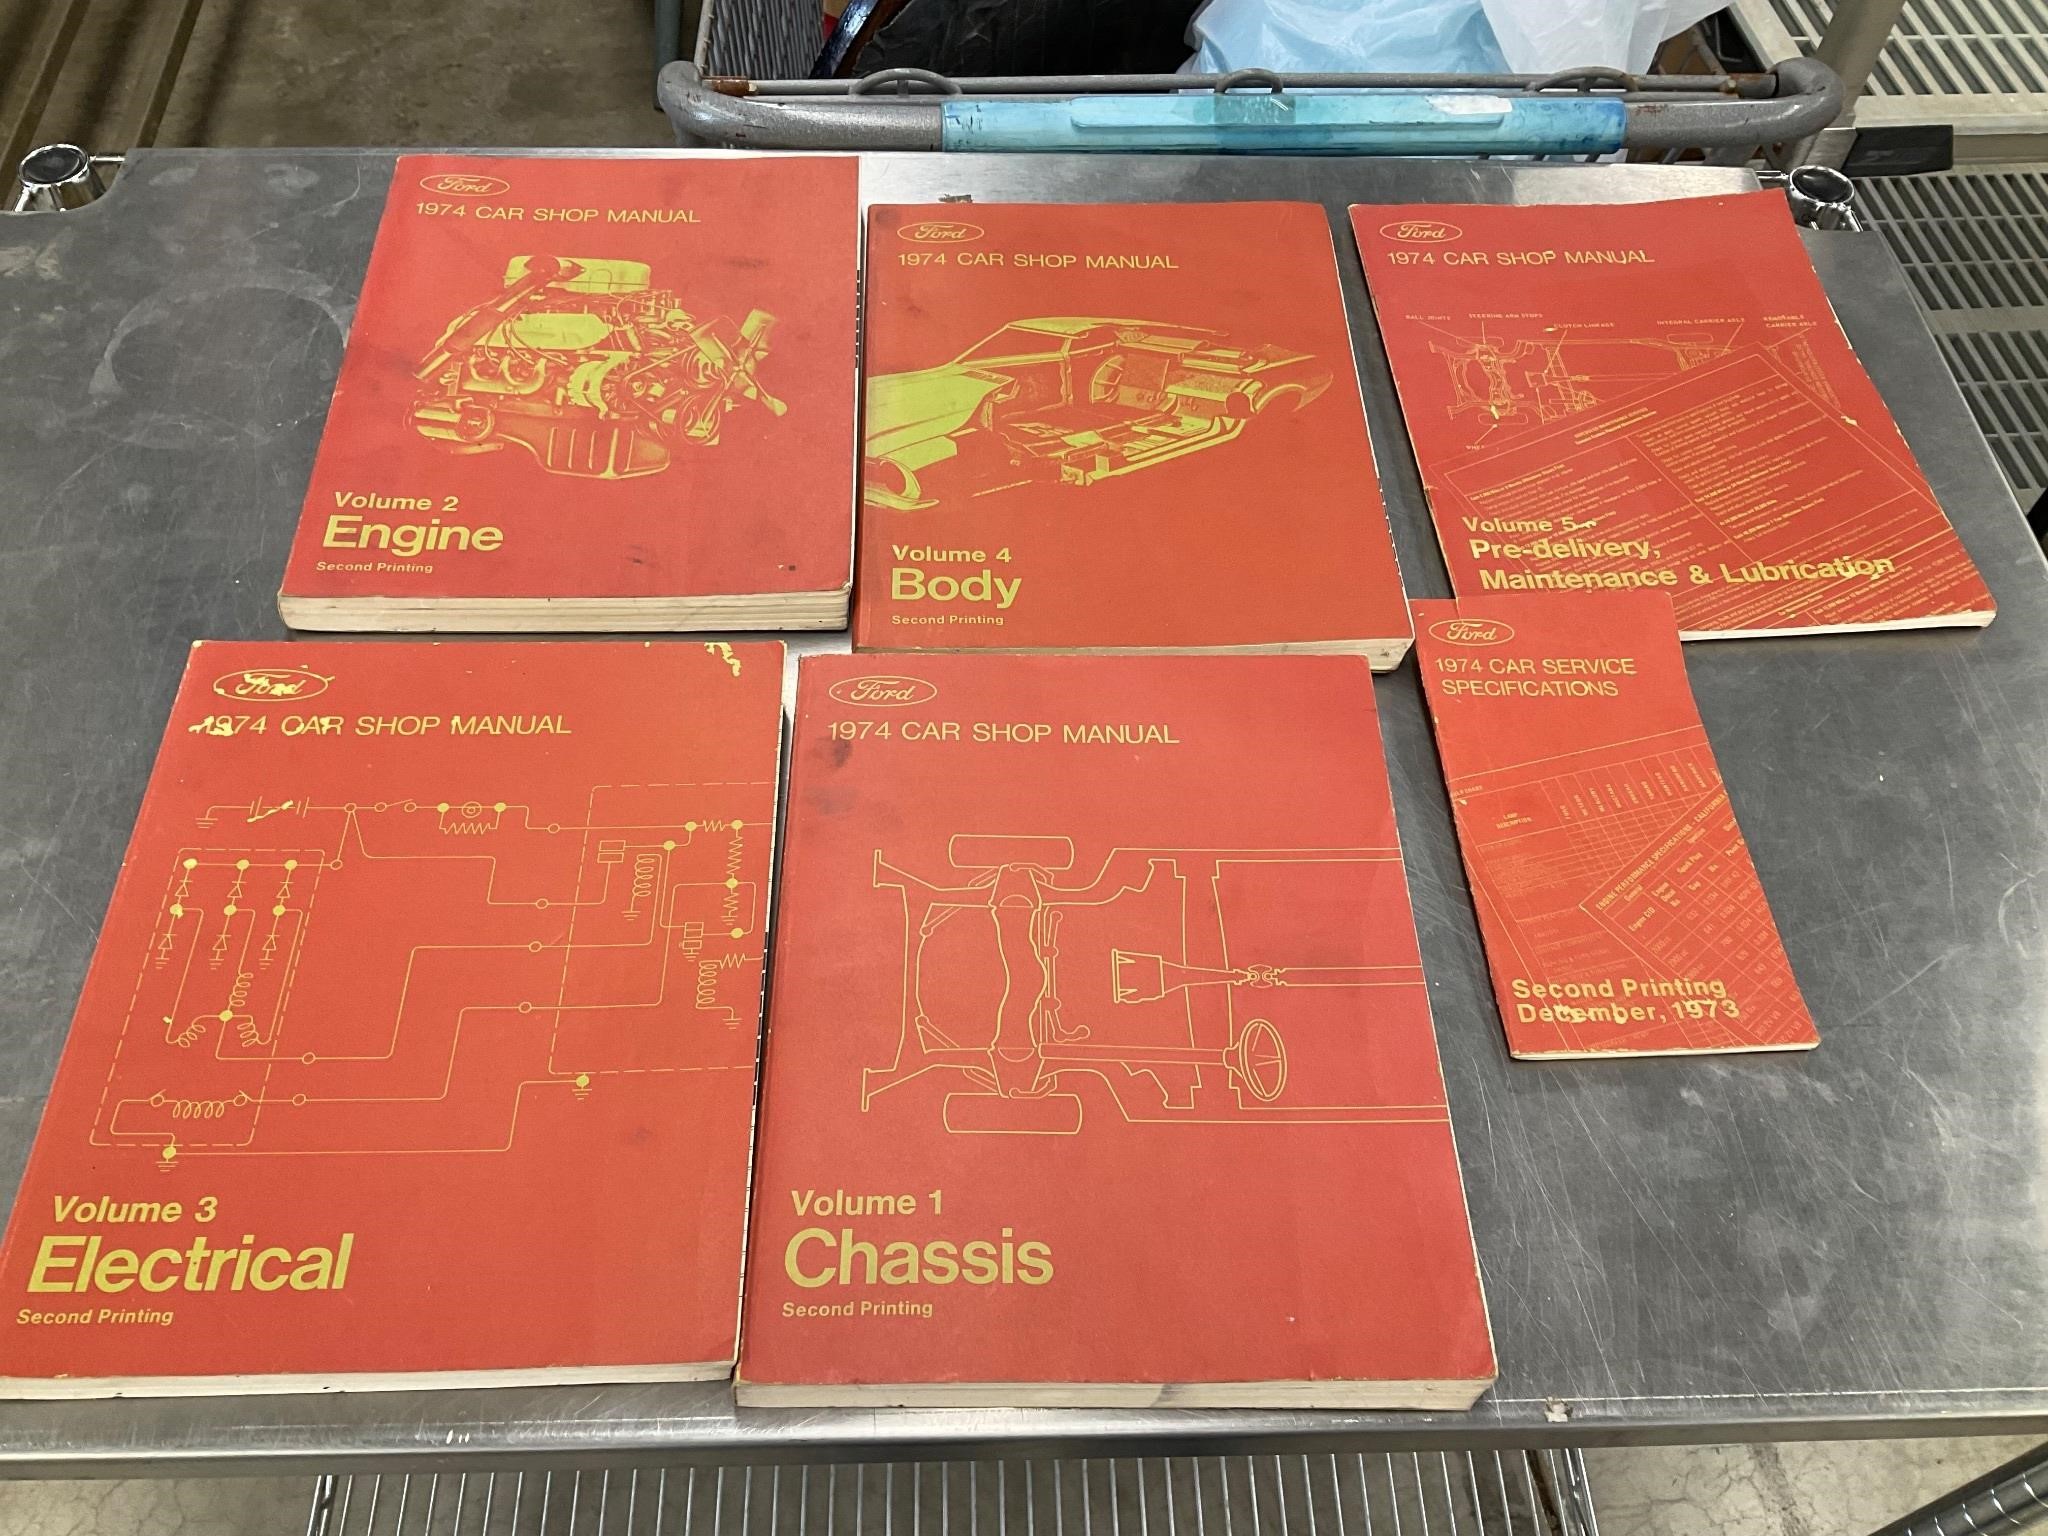 1974 Ford shop manuals